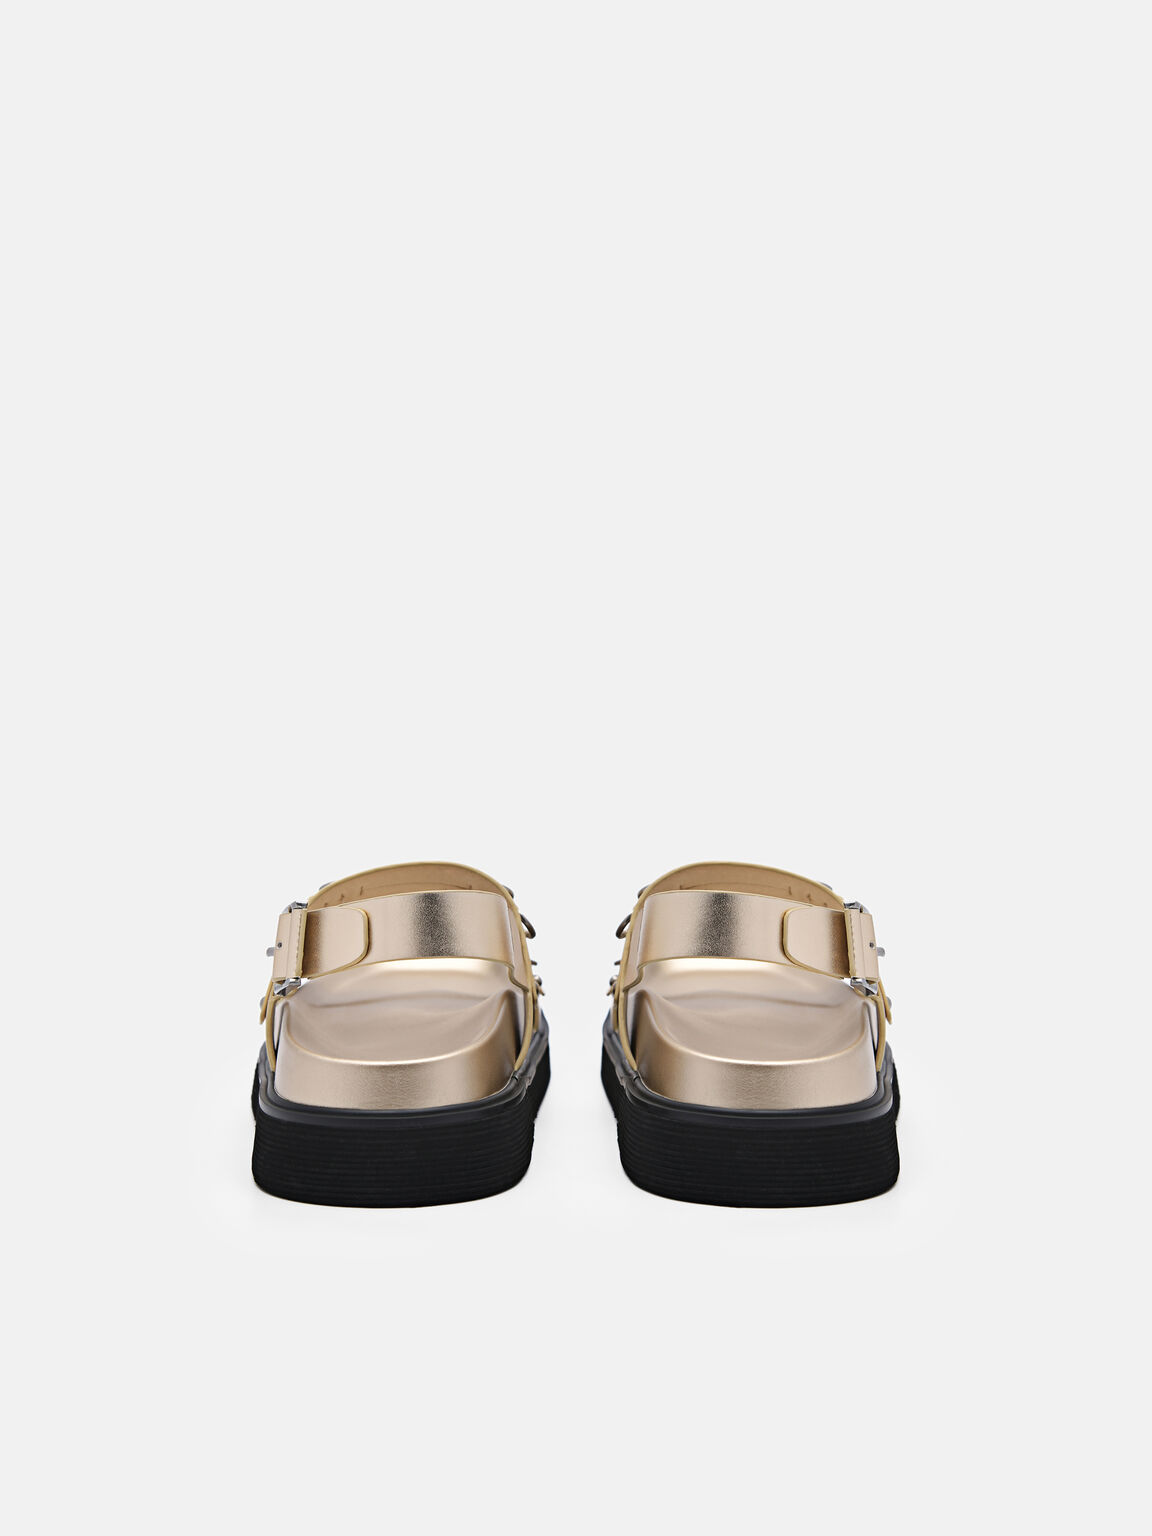 Helix Slingback Sandals, Gold, hi-res